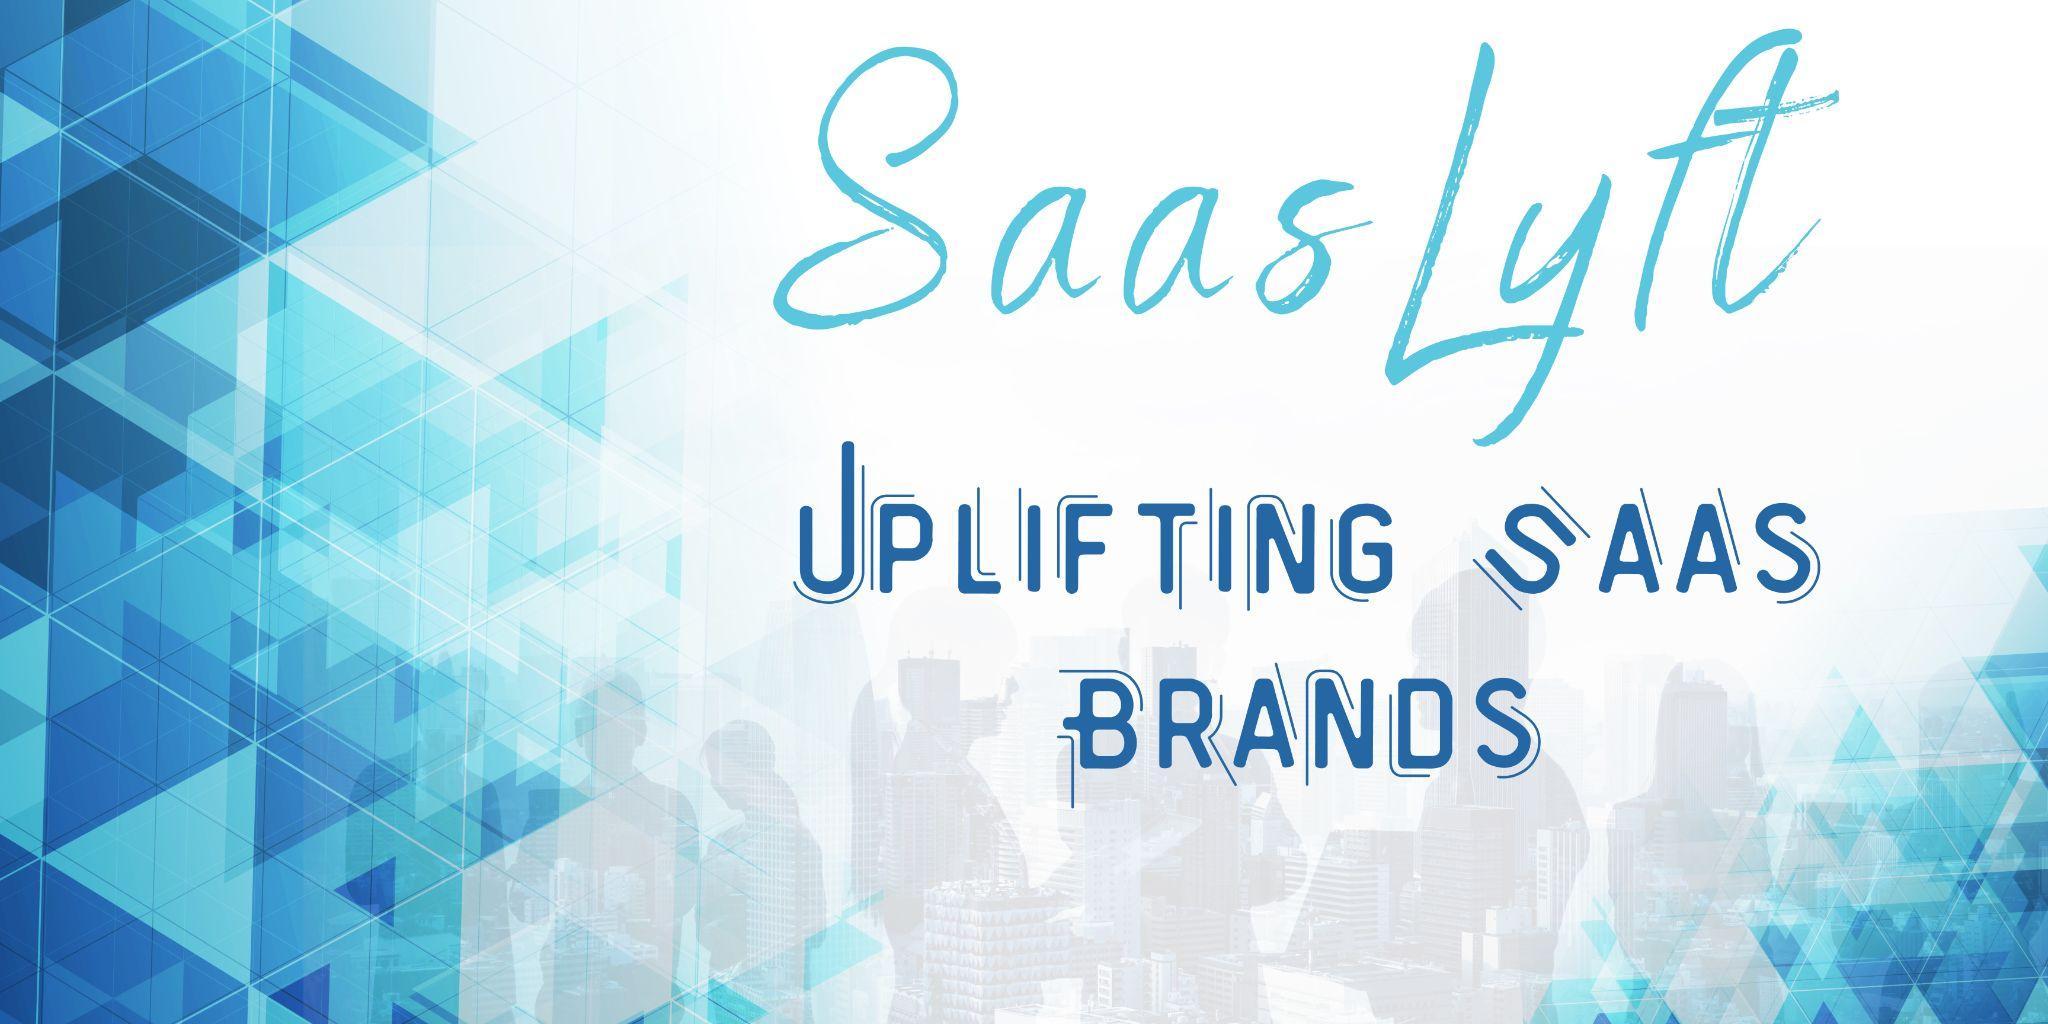 SaasLyft Breaks Ground in Uplifting SaaS Industry